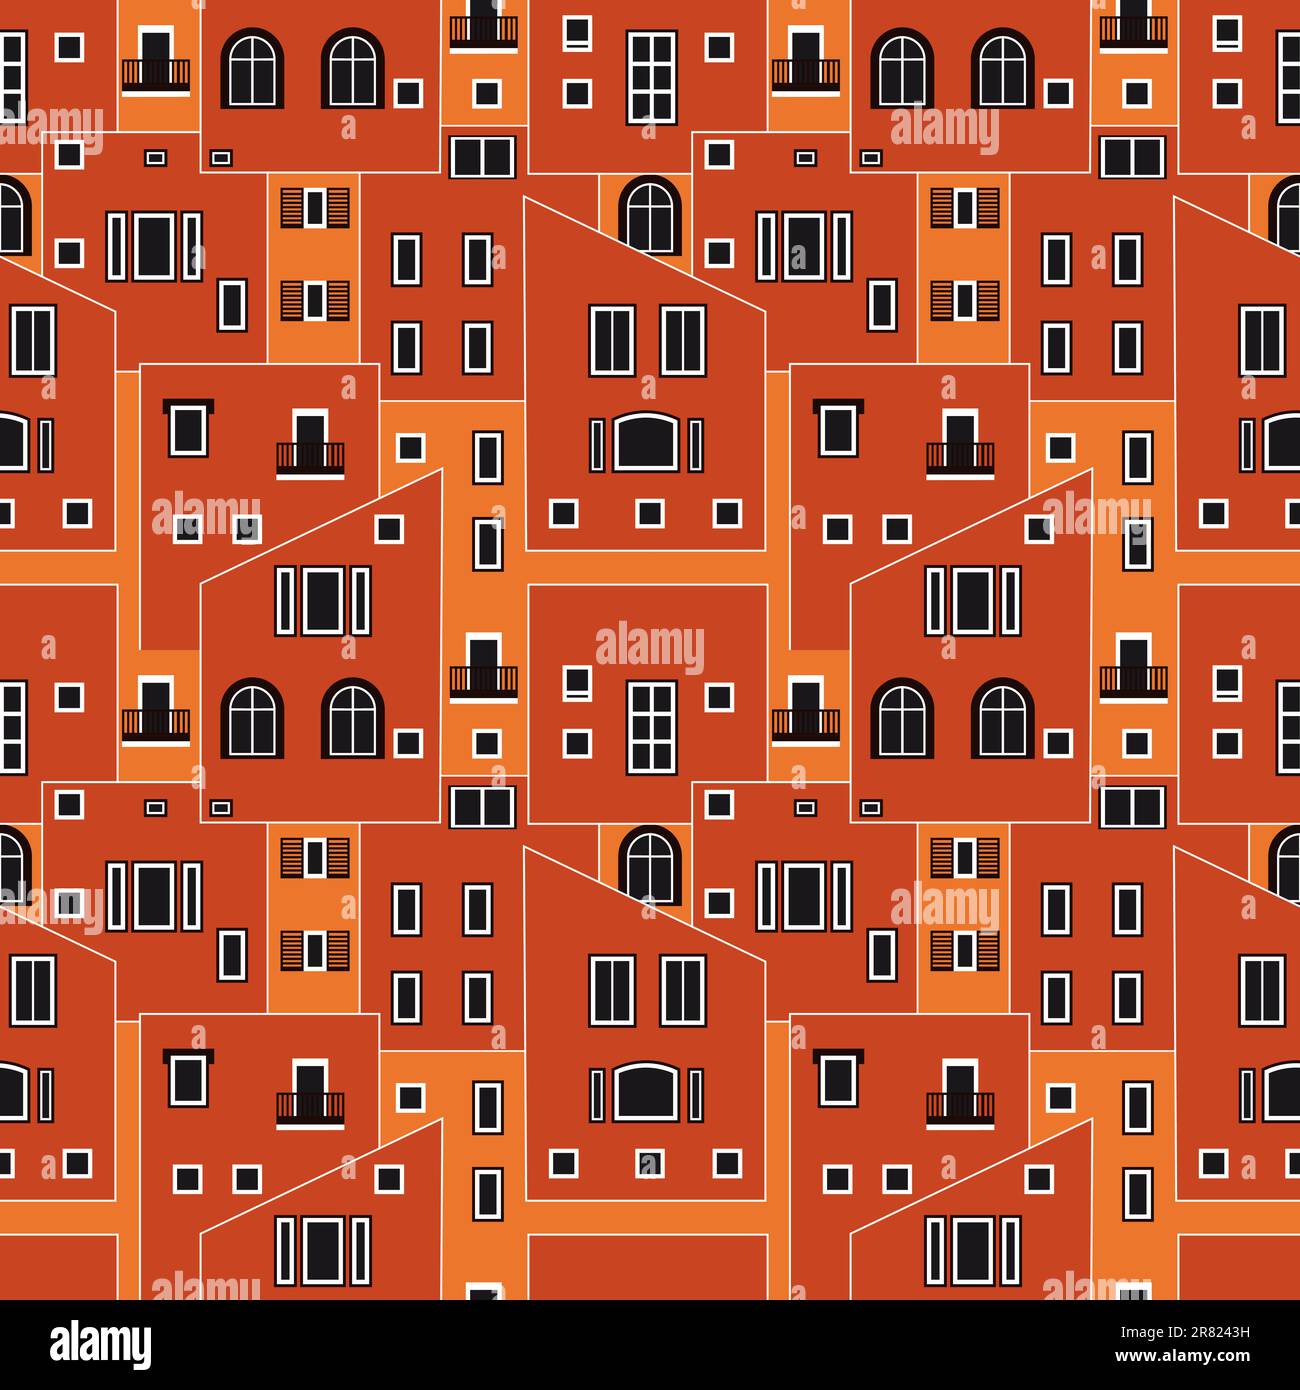 Abstrakte Komposition - Stadtfenster in Orangentönen Stock Vektor